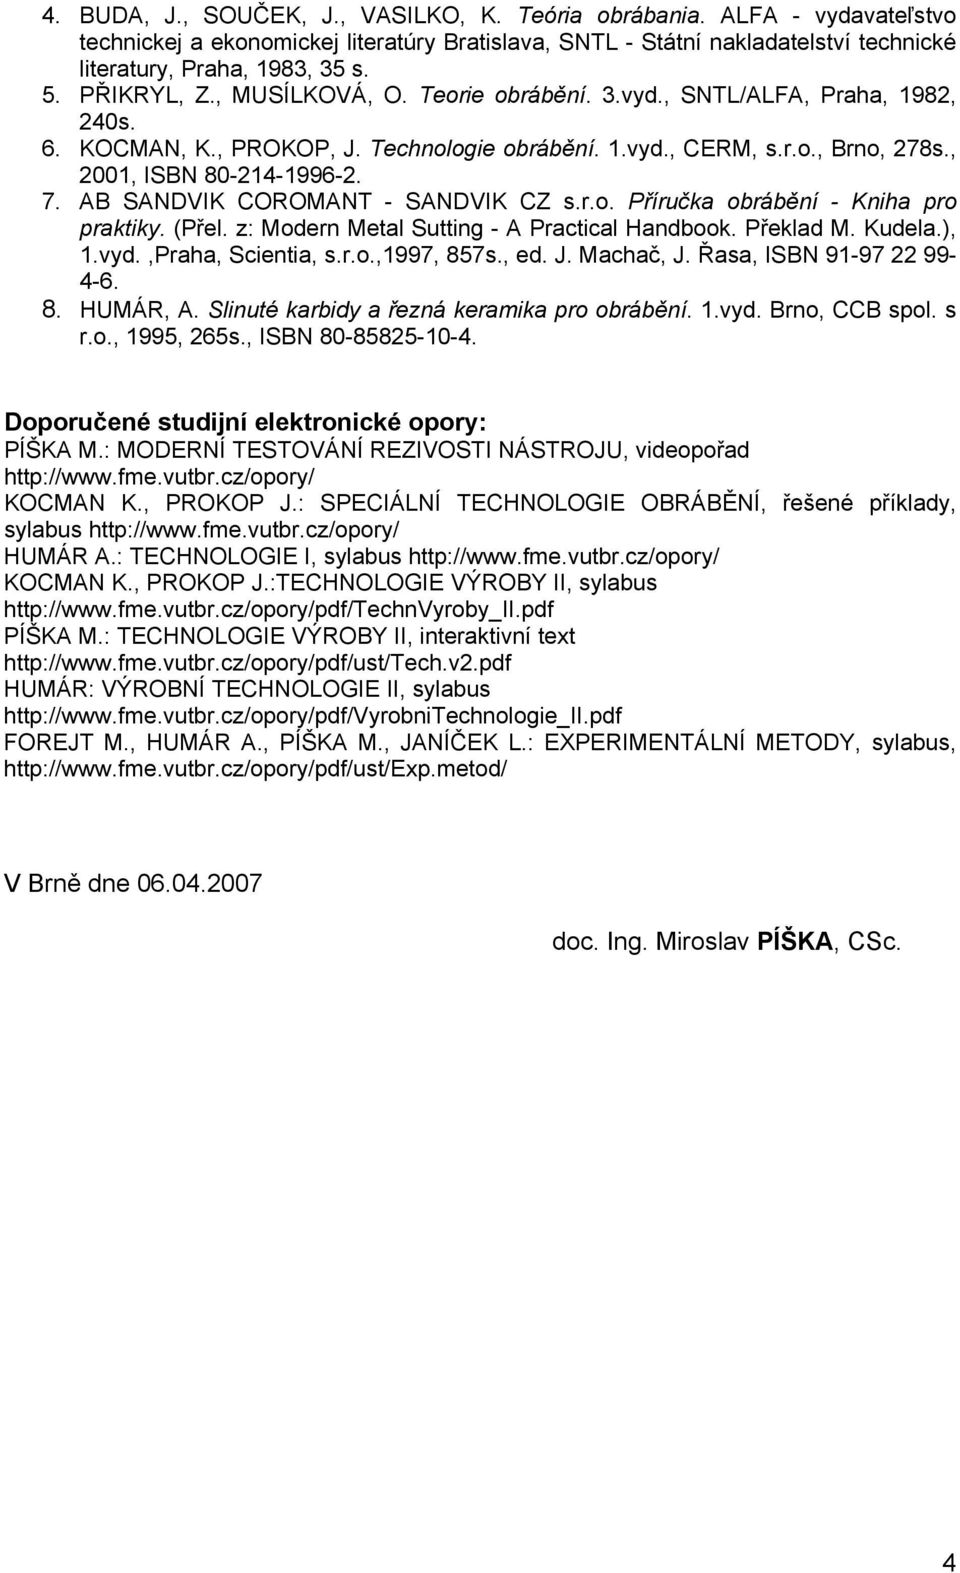 AB SANDVIK COROMANT - SANDVIK CZ s.r.o. Příručka obrábění - Kniha pro praktiky. (Přel. z: Modern Metal Sutting - A Practical Handbook. Překlad M. Kudela.), 1.vyd.,Praha, Scientia, s.r.o.,1997, 857s.